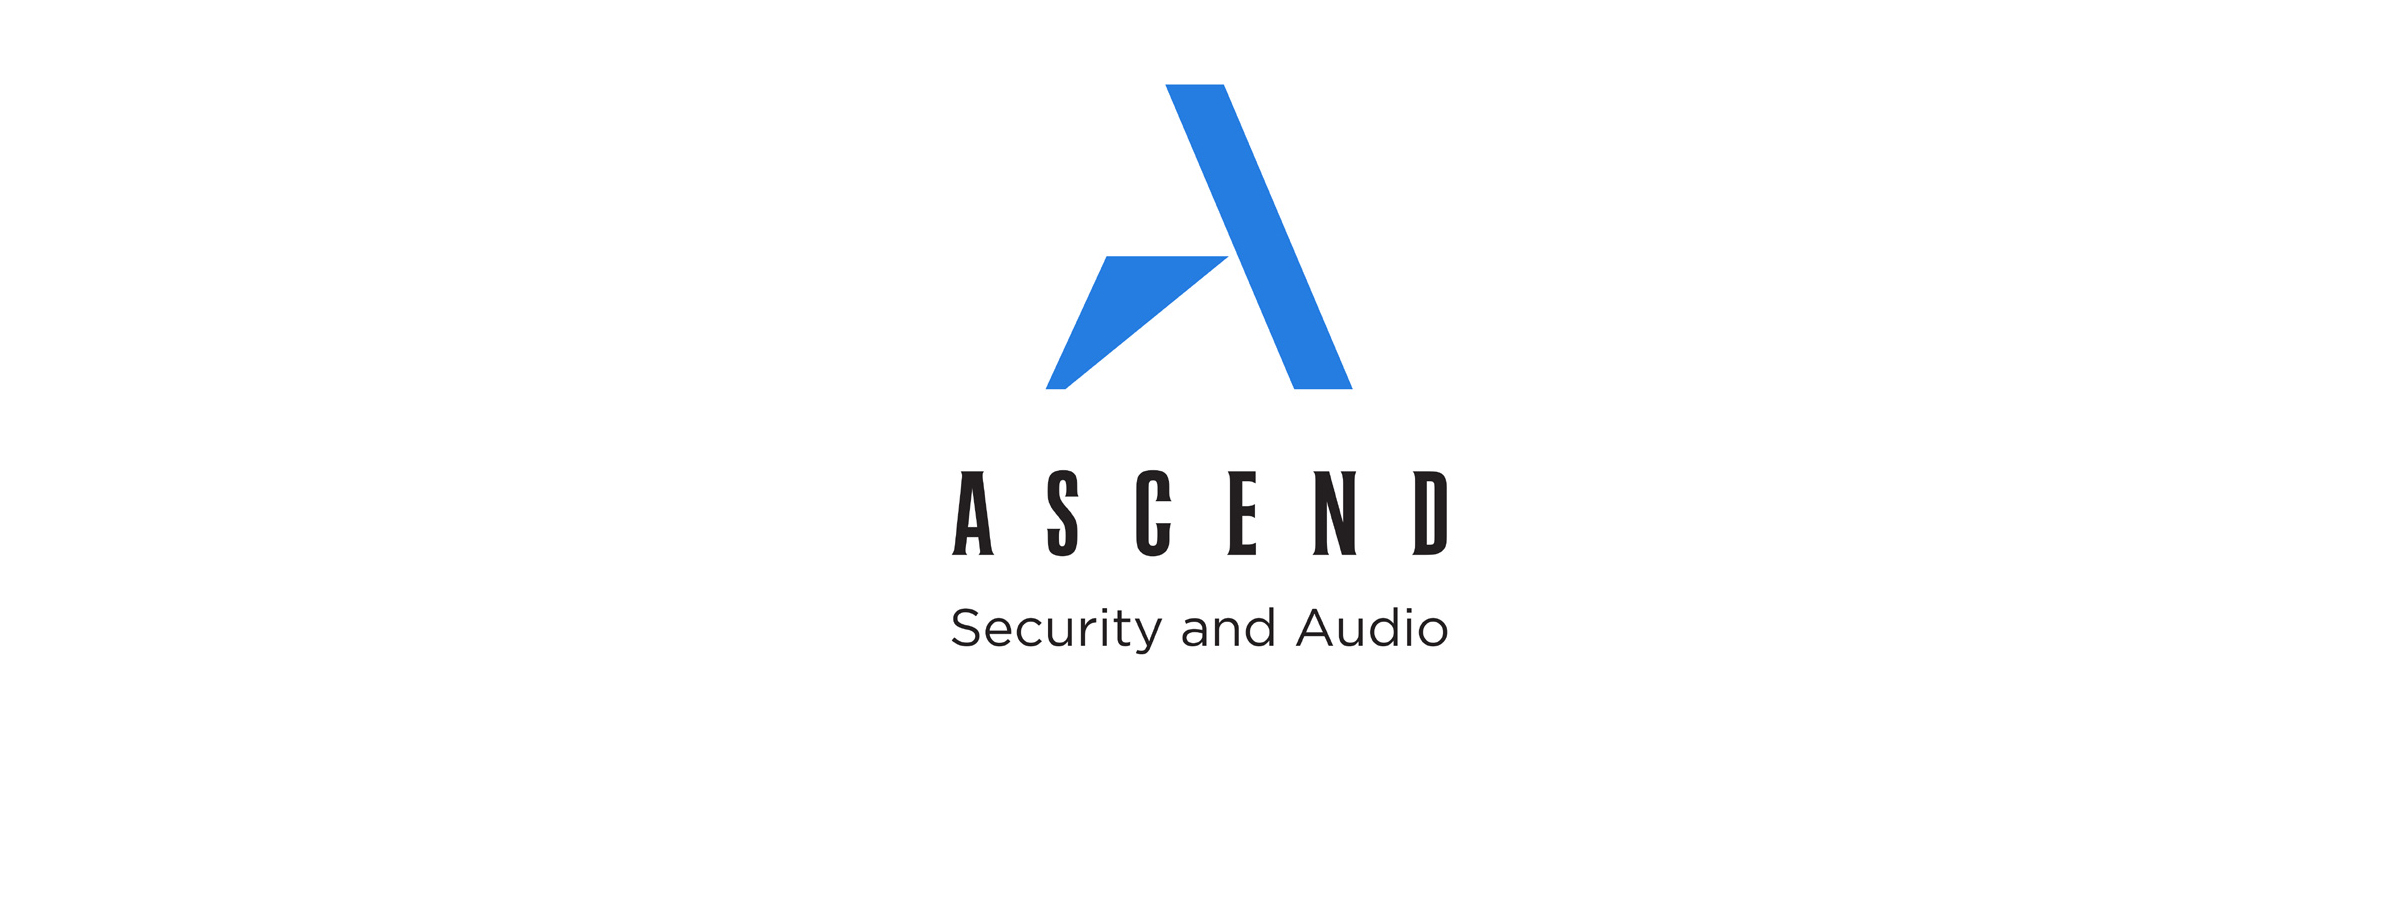 Ascend logo.jpg